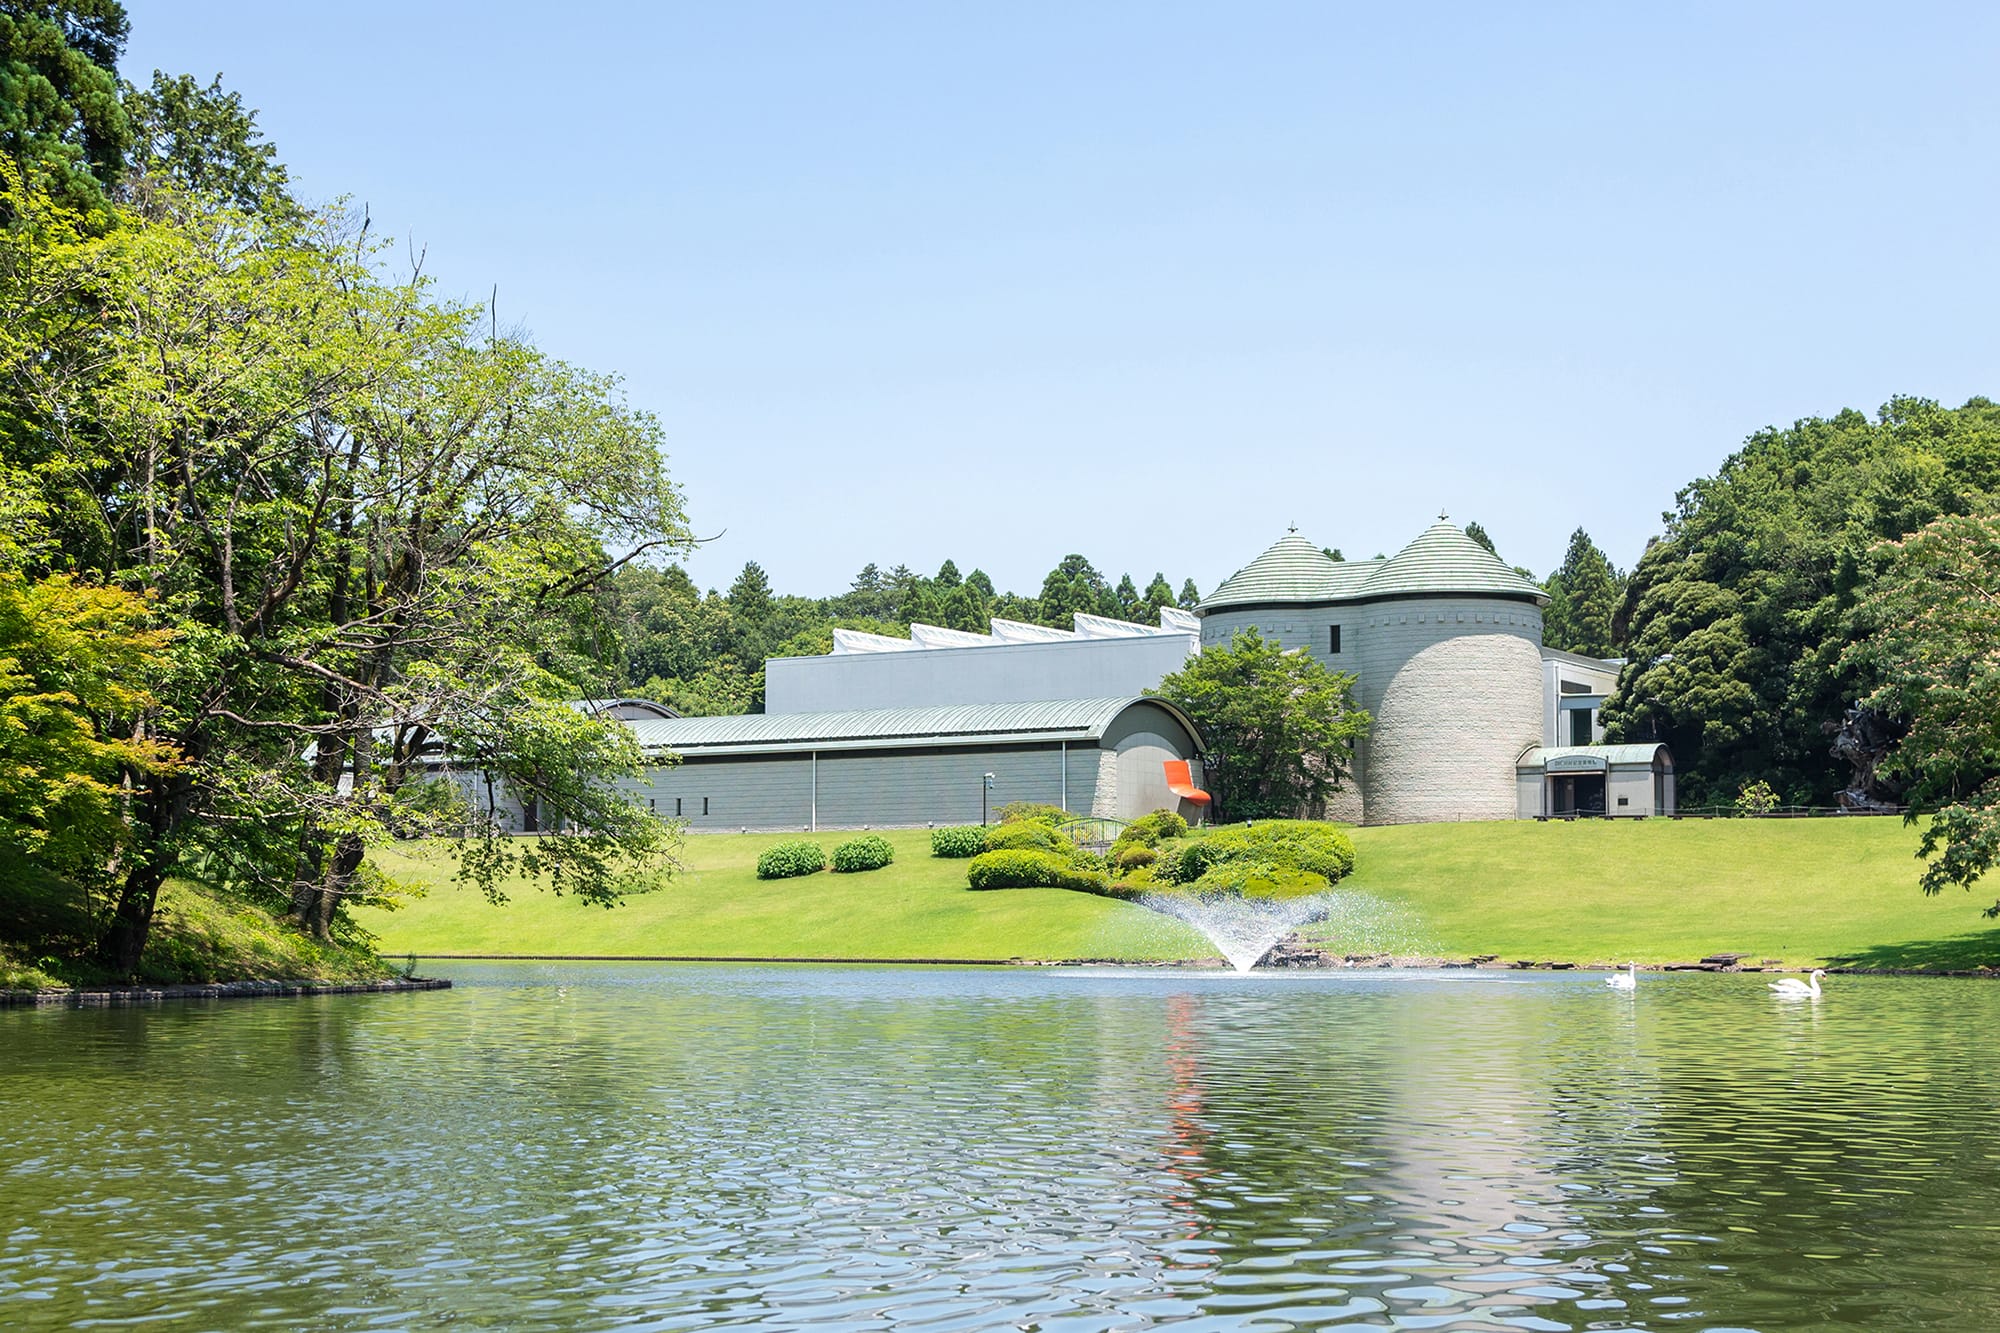 DIC川村記念美術館の外観。建築デザインは海老原一郎。かつて里山であった名残を留め、庭園にはなだらかな起伏が広がっている。Photo: Manami Takahashi